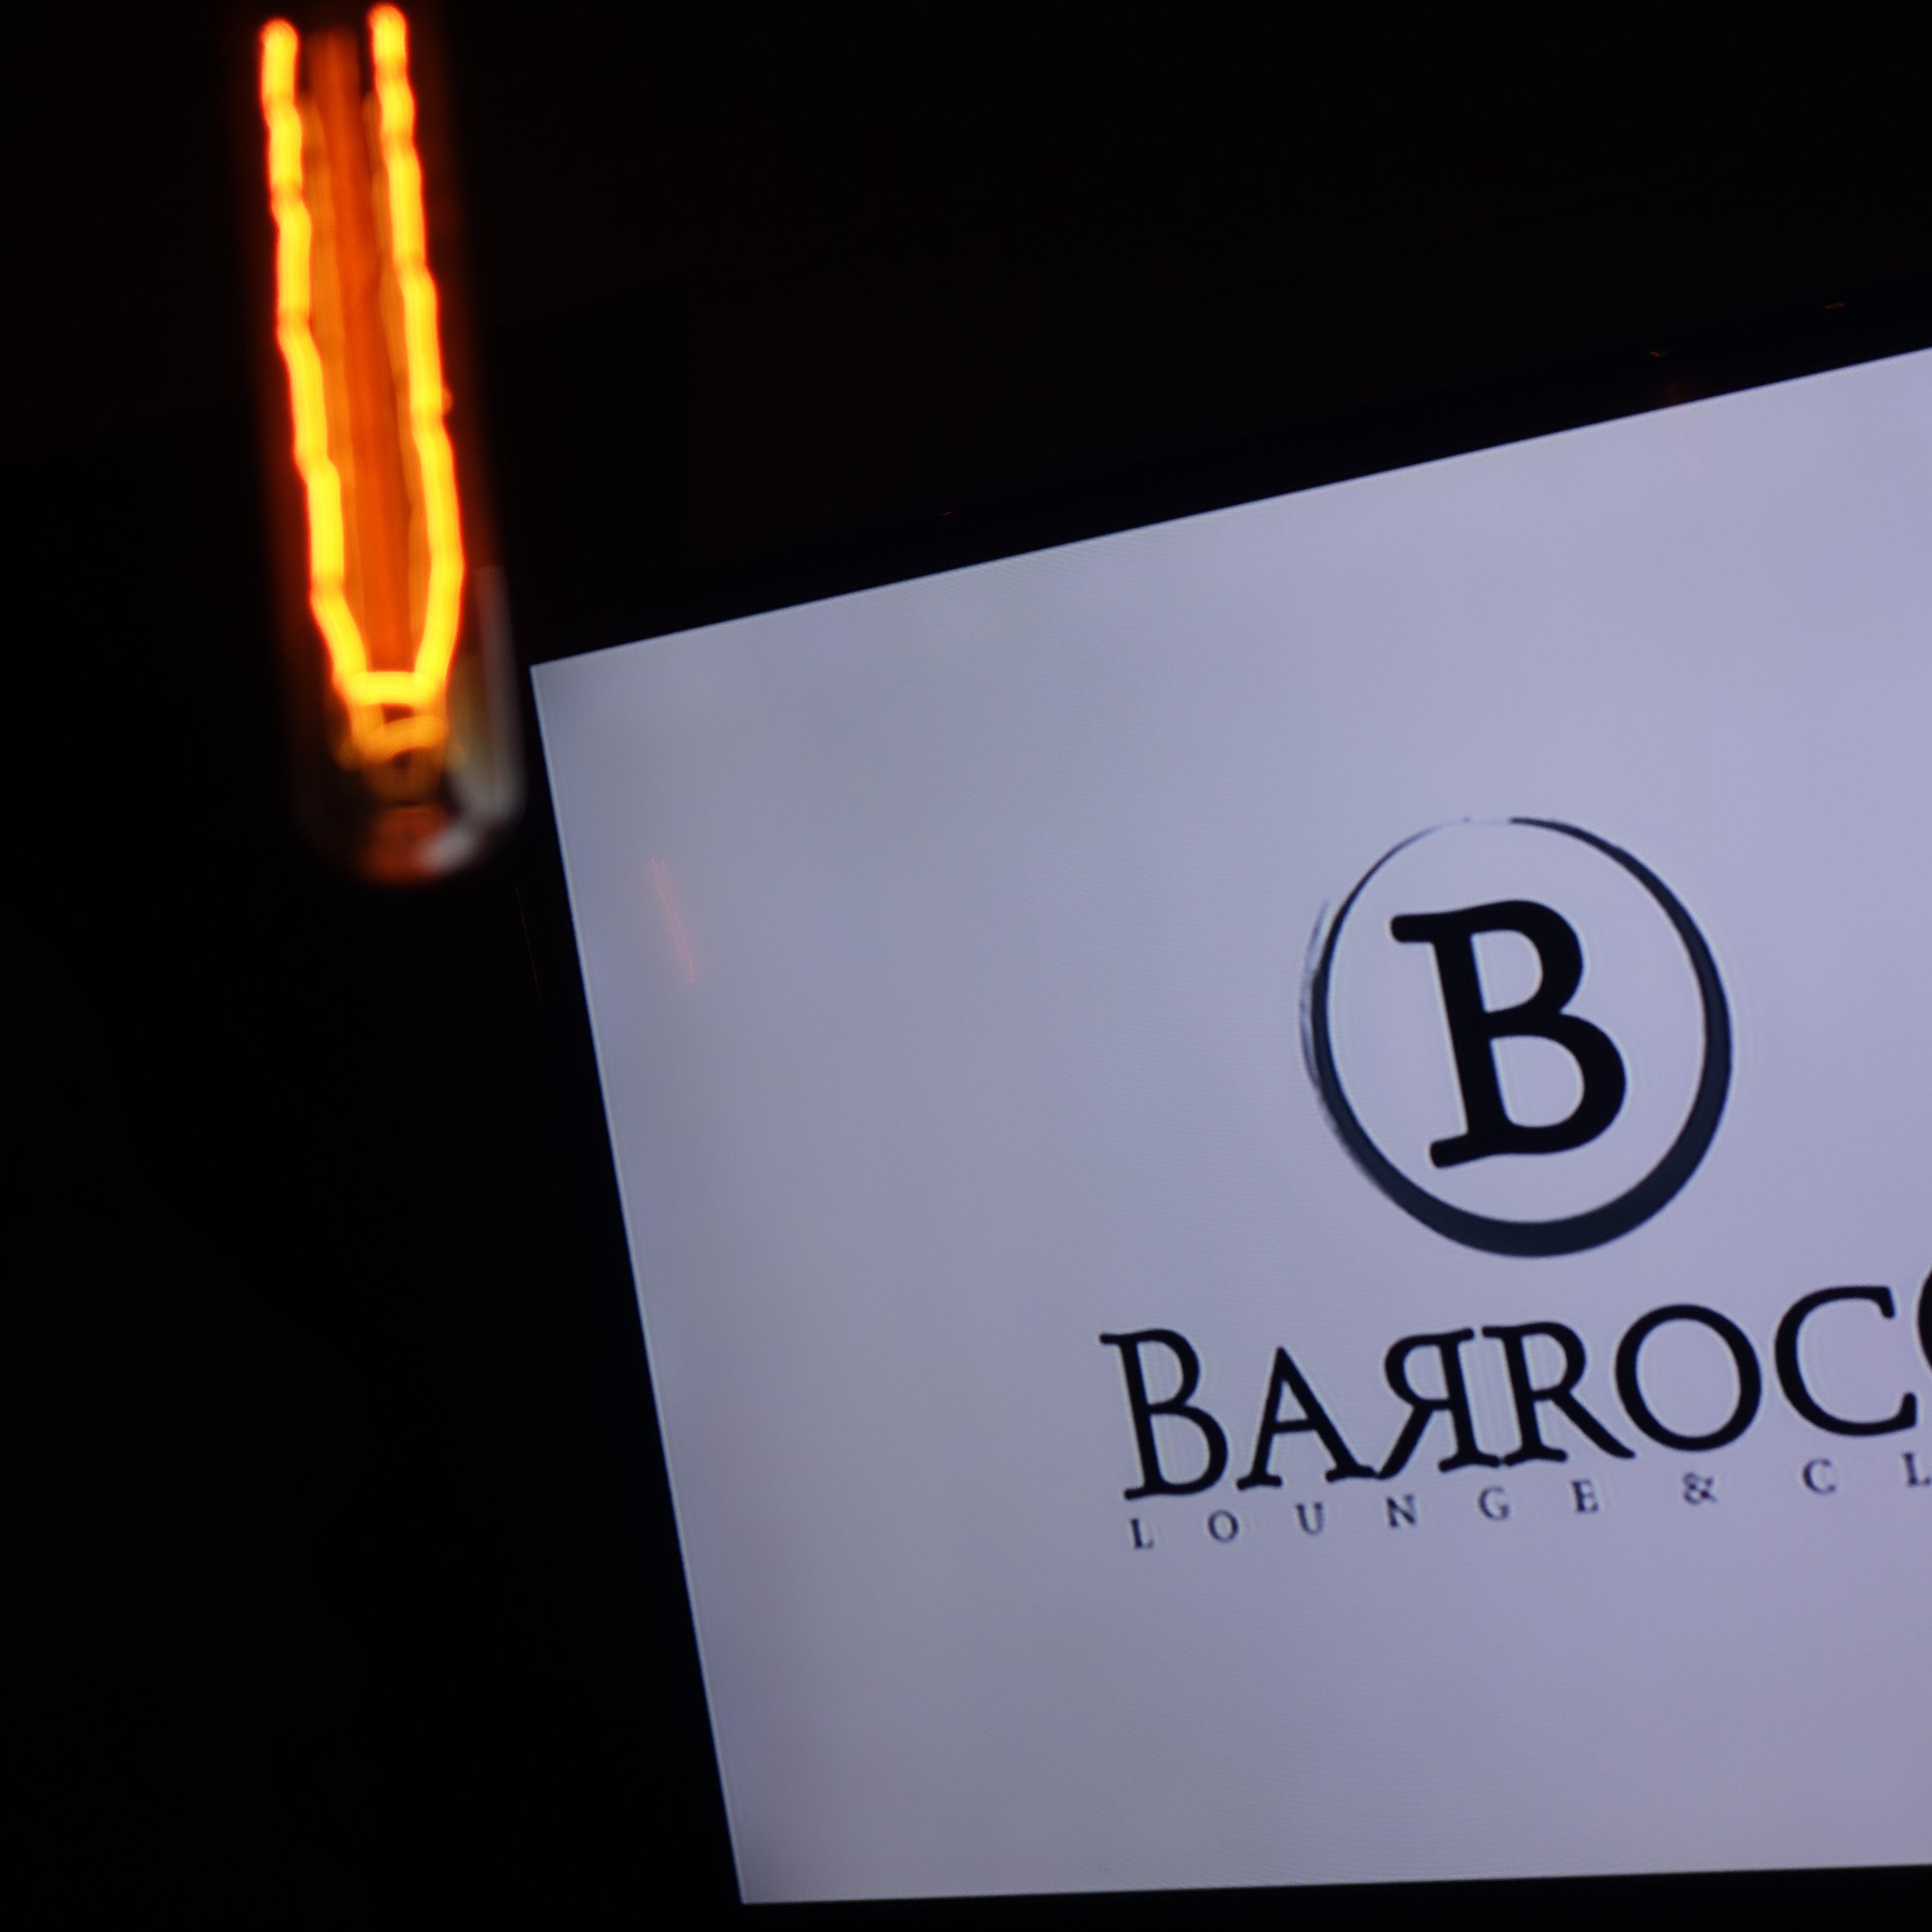 El primer boutique nightclub de Honduras. Barroco transforma la elegancia del siglo 16 en un nightclub de alta energia